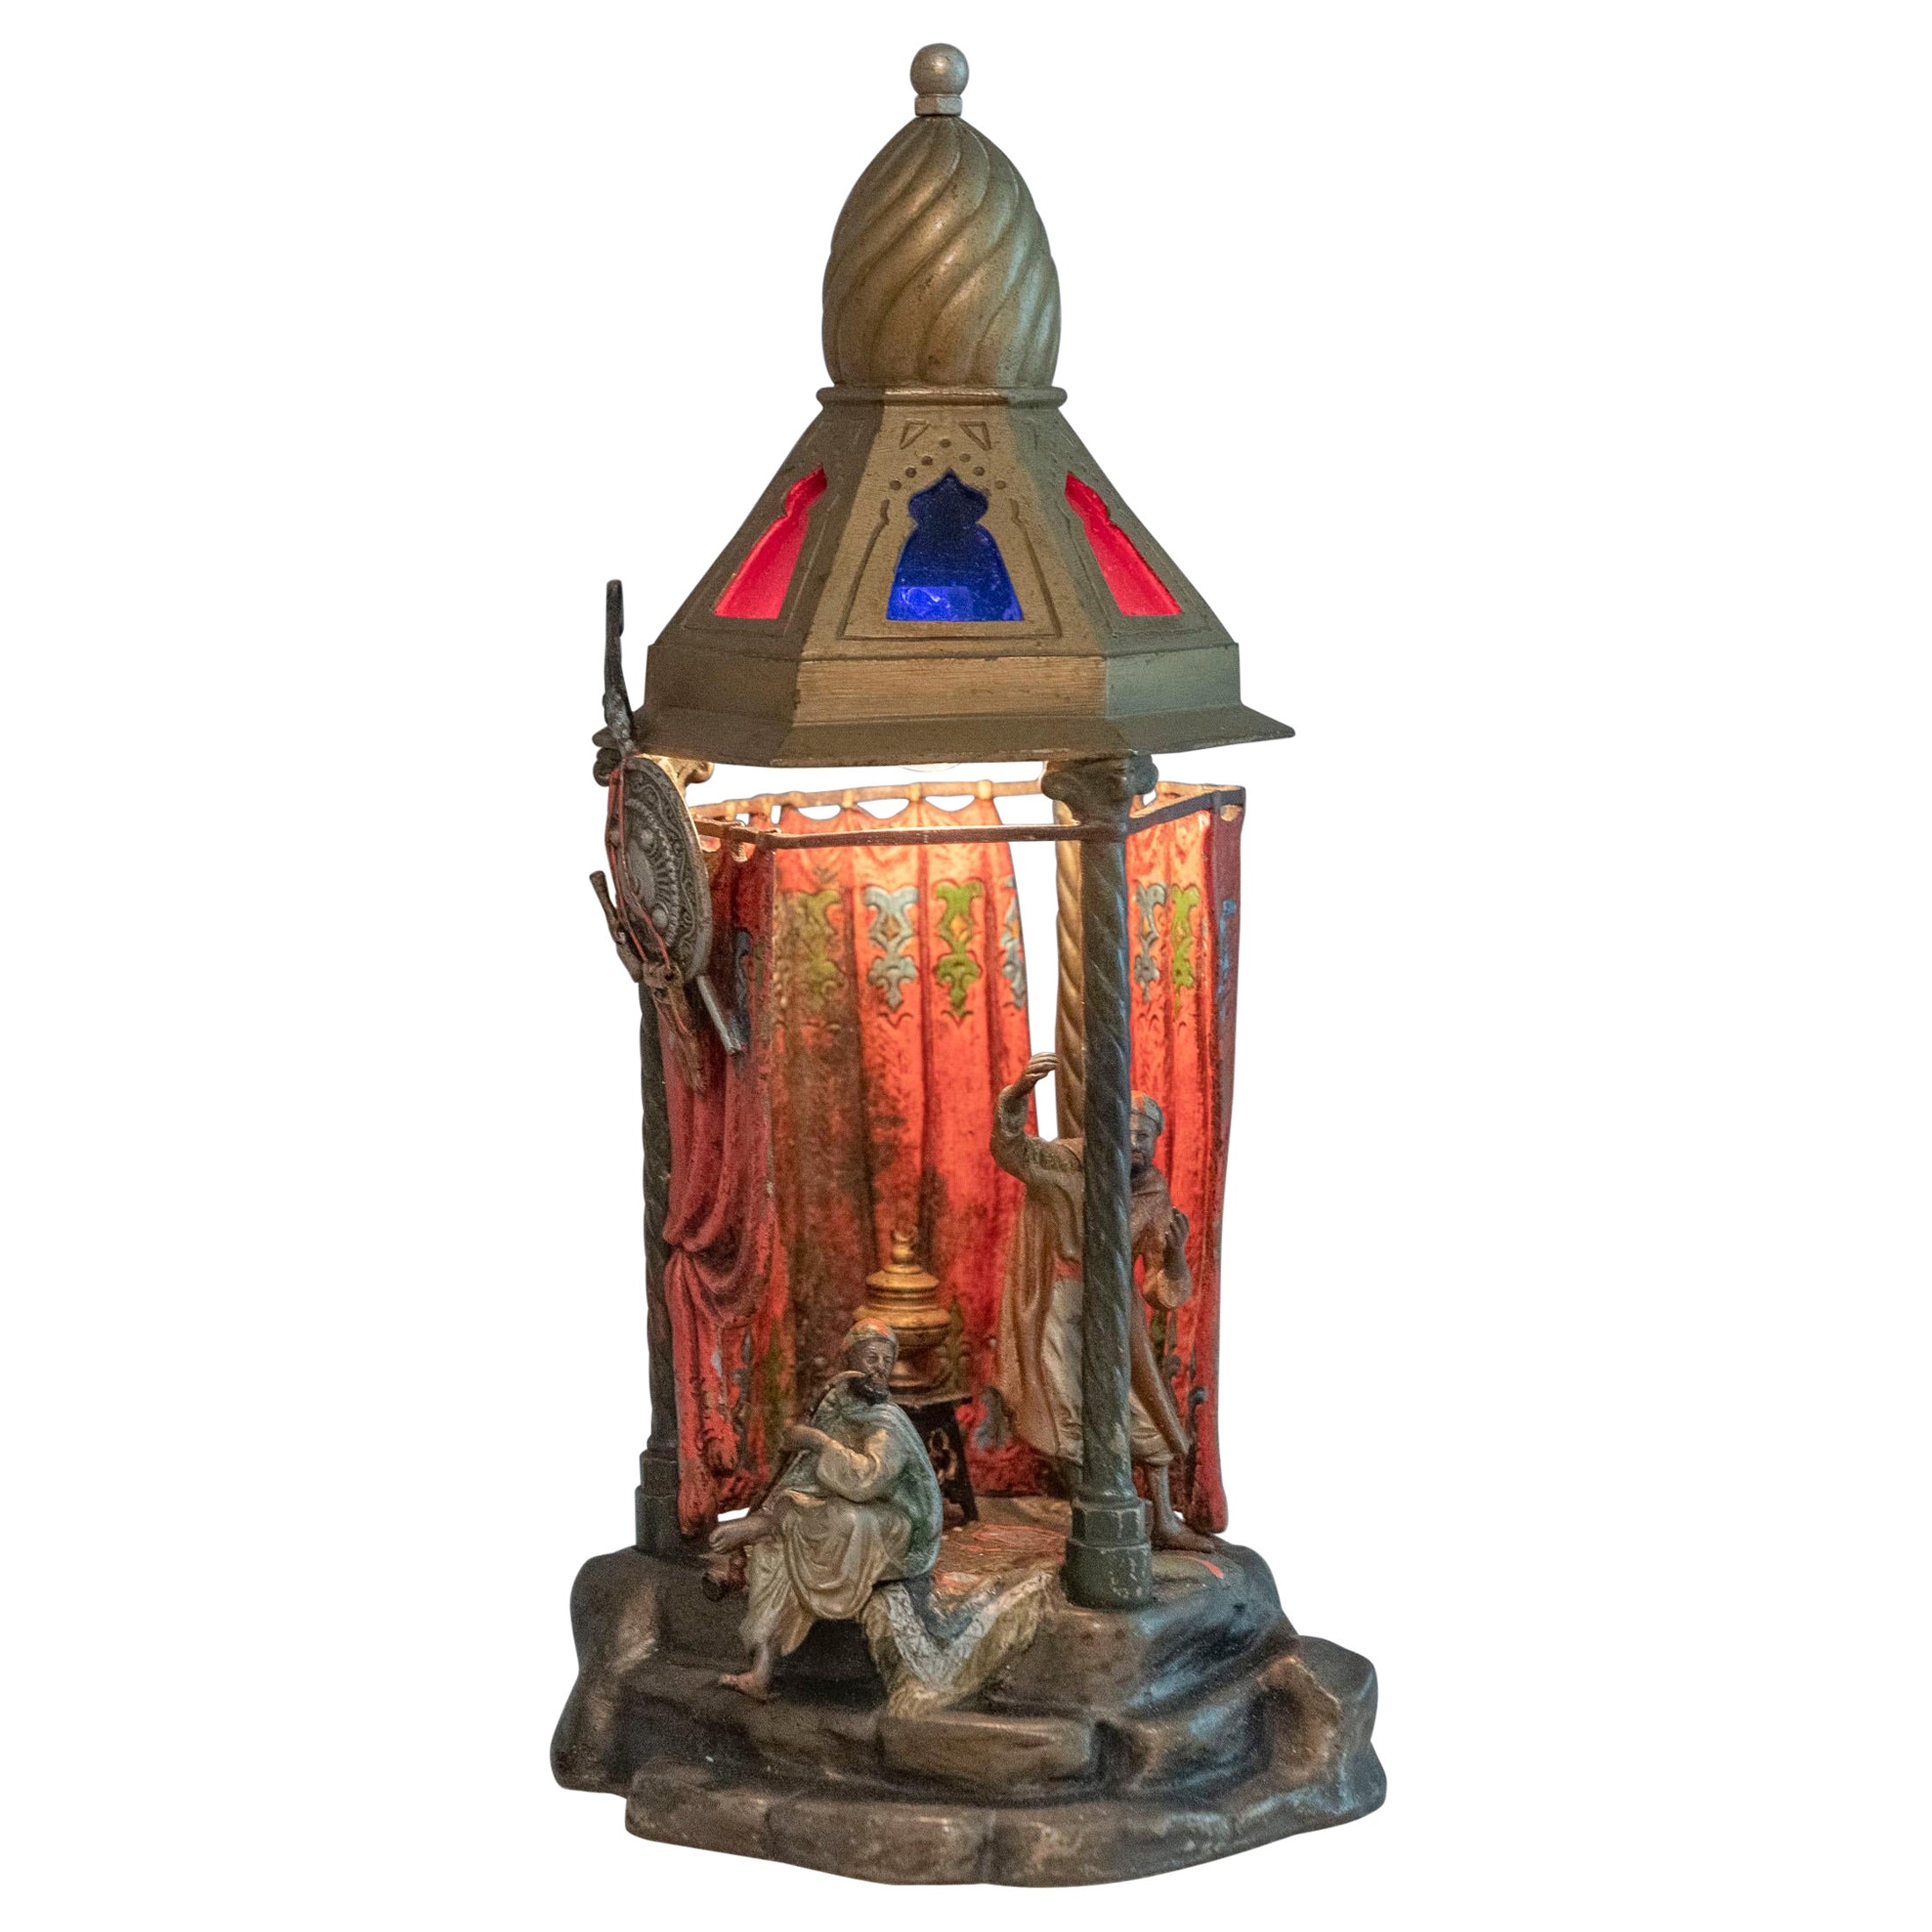 Orientalische österreichische Kaltbemalte Bronze-Lampe mit 2 Figuren in einem kleinen Raum